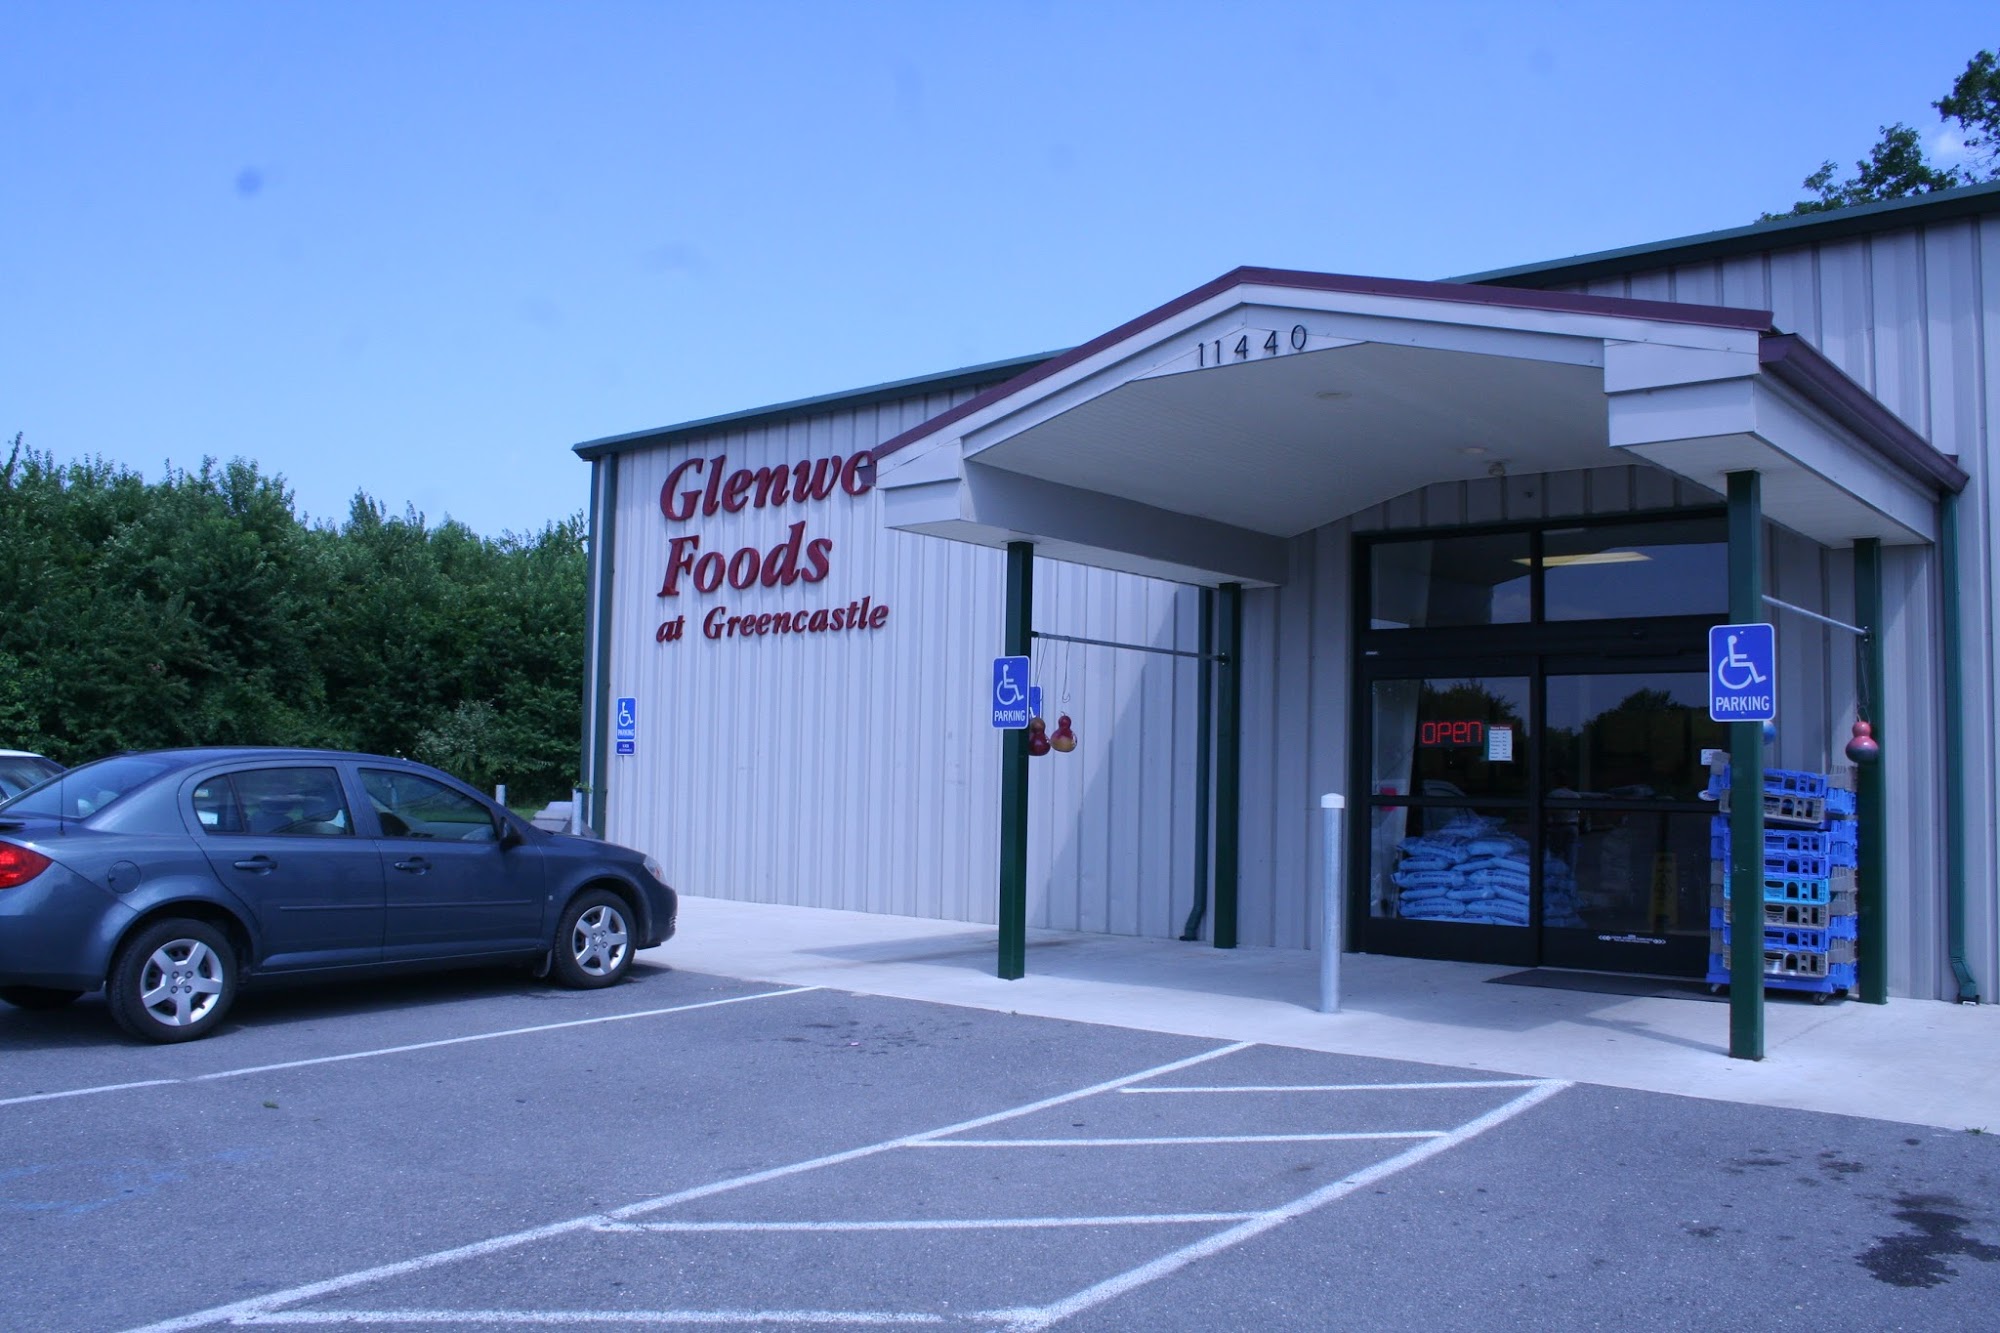 Glenwood Foods At Greencastle